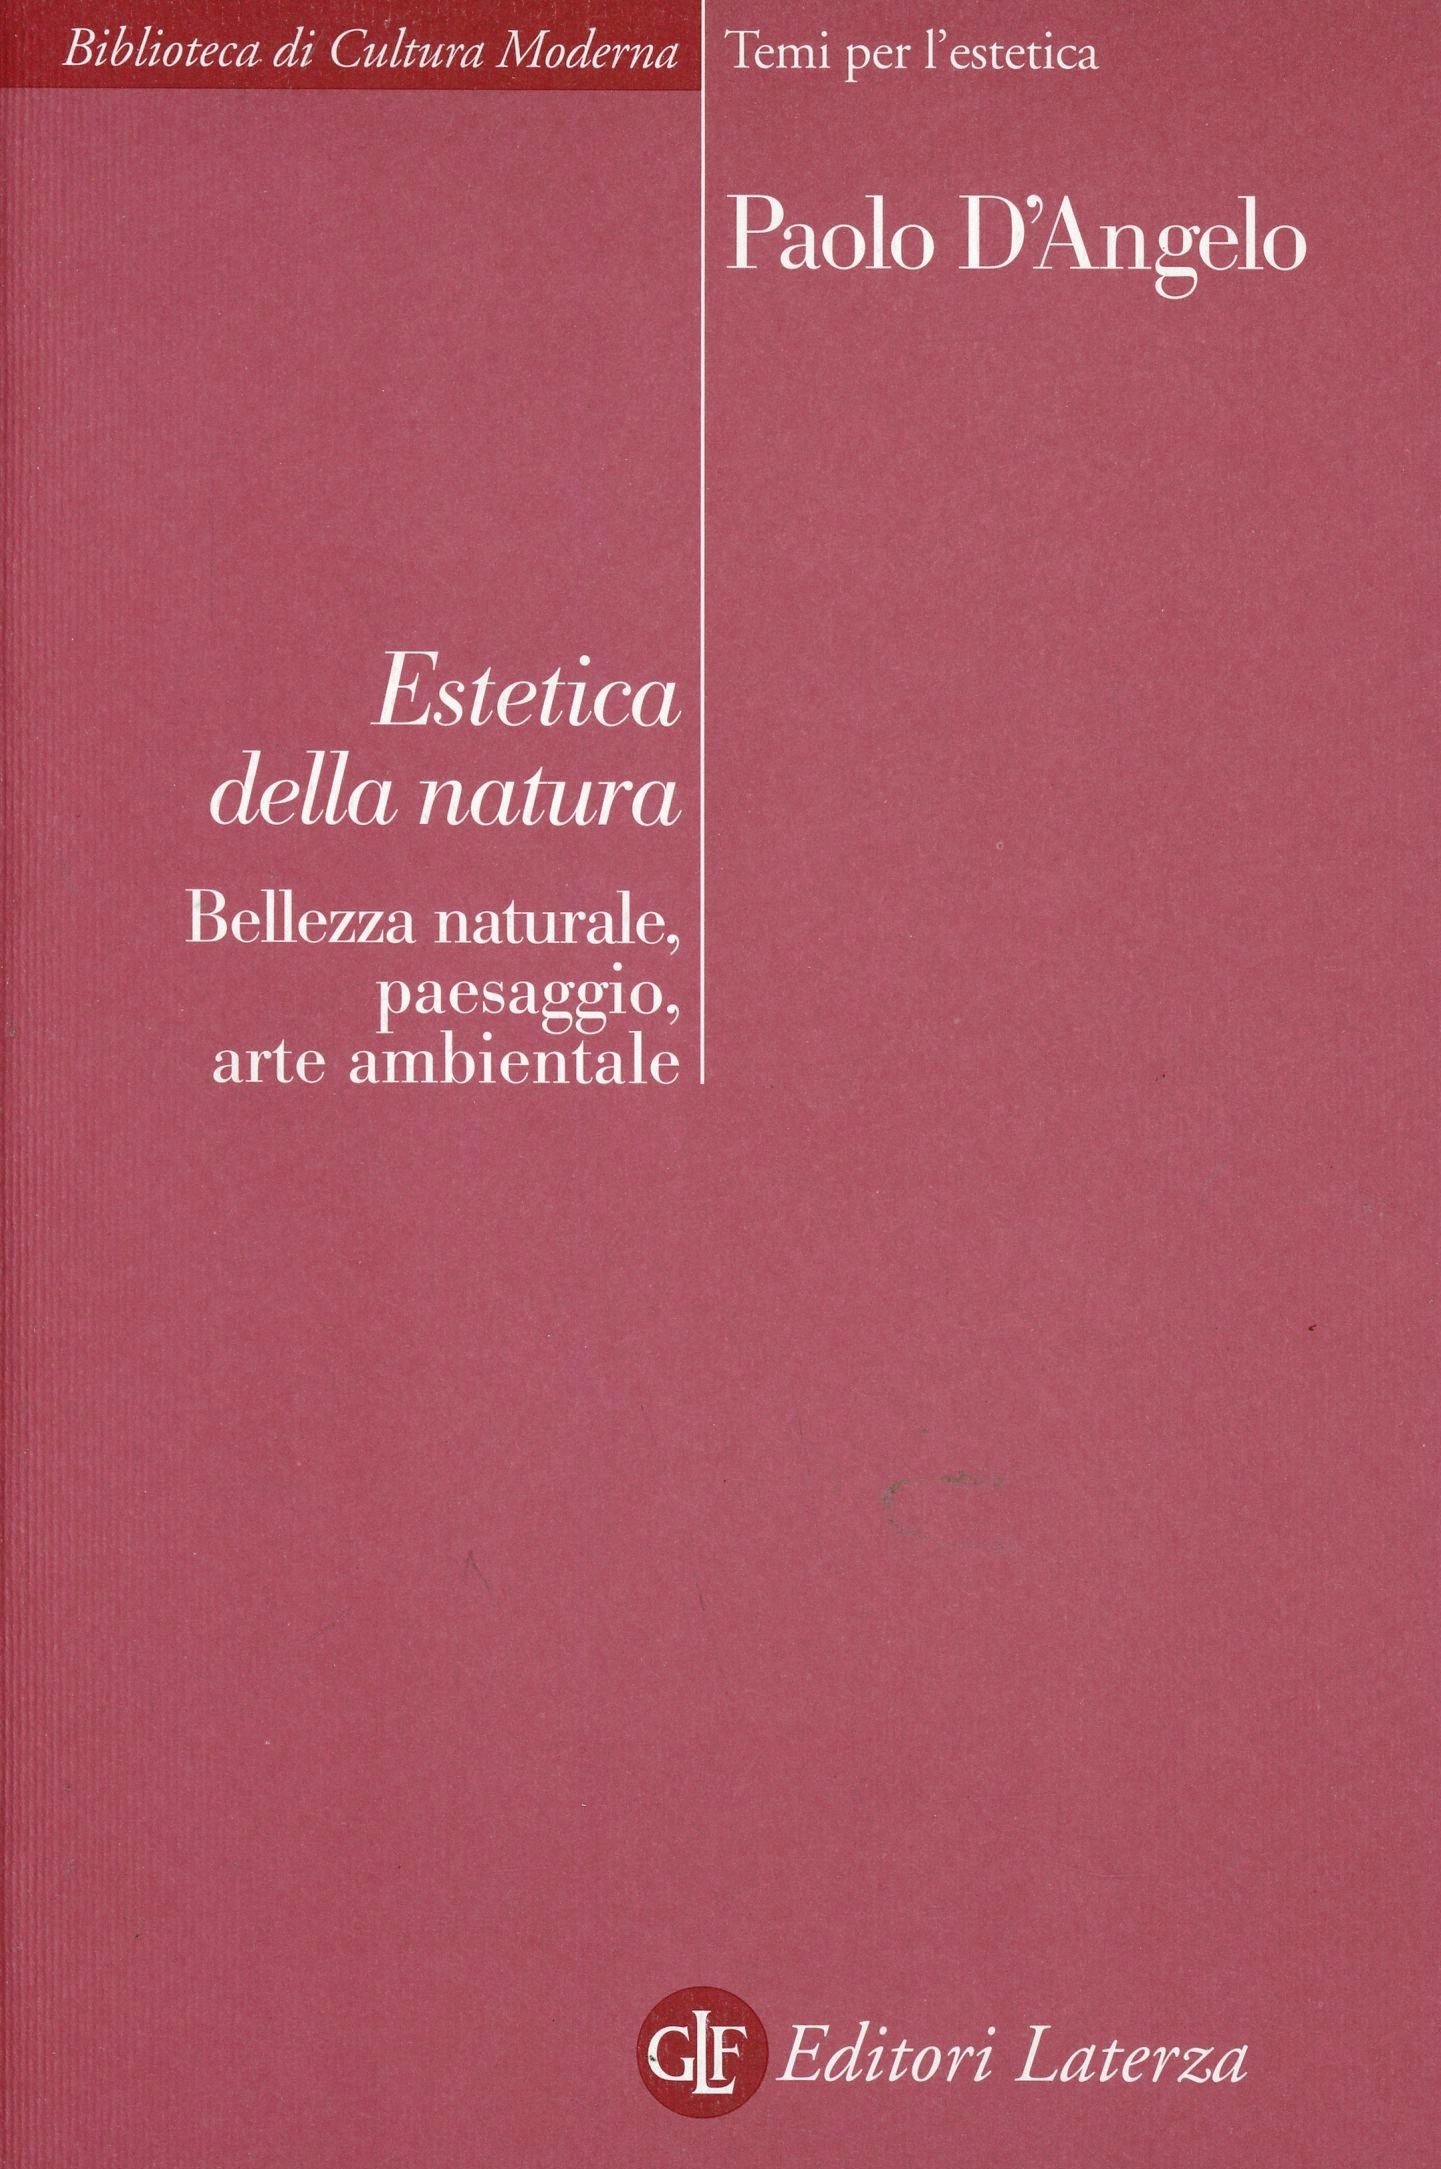 Paolo D’Angelo, Estetica della natura (Laterza, 2010)